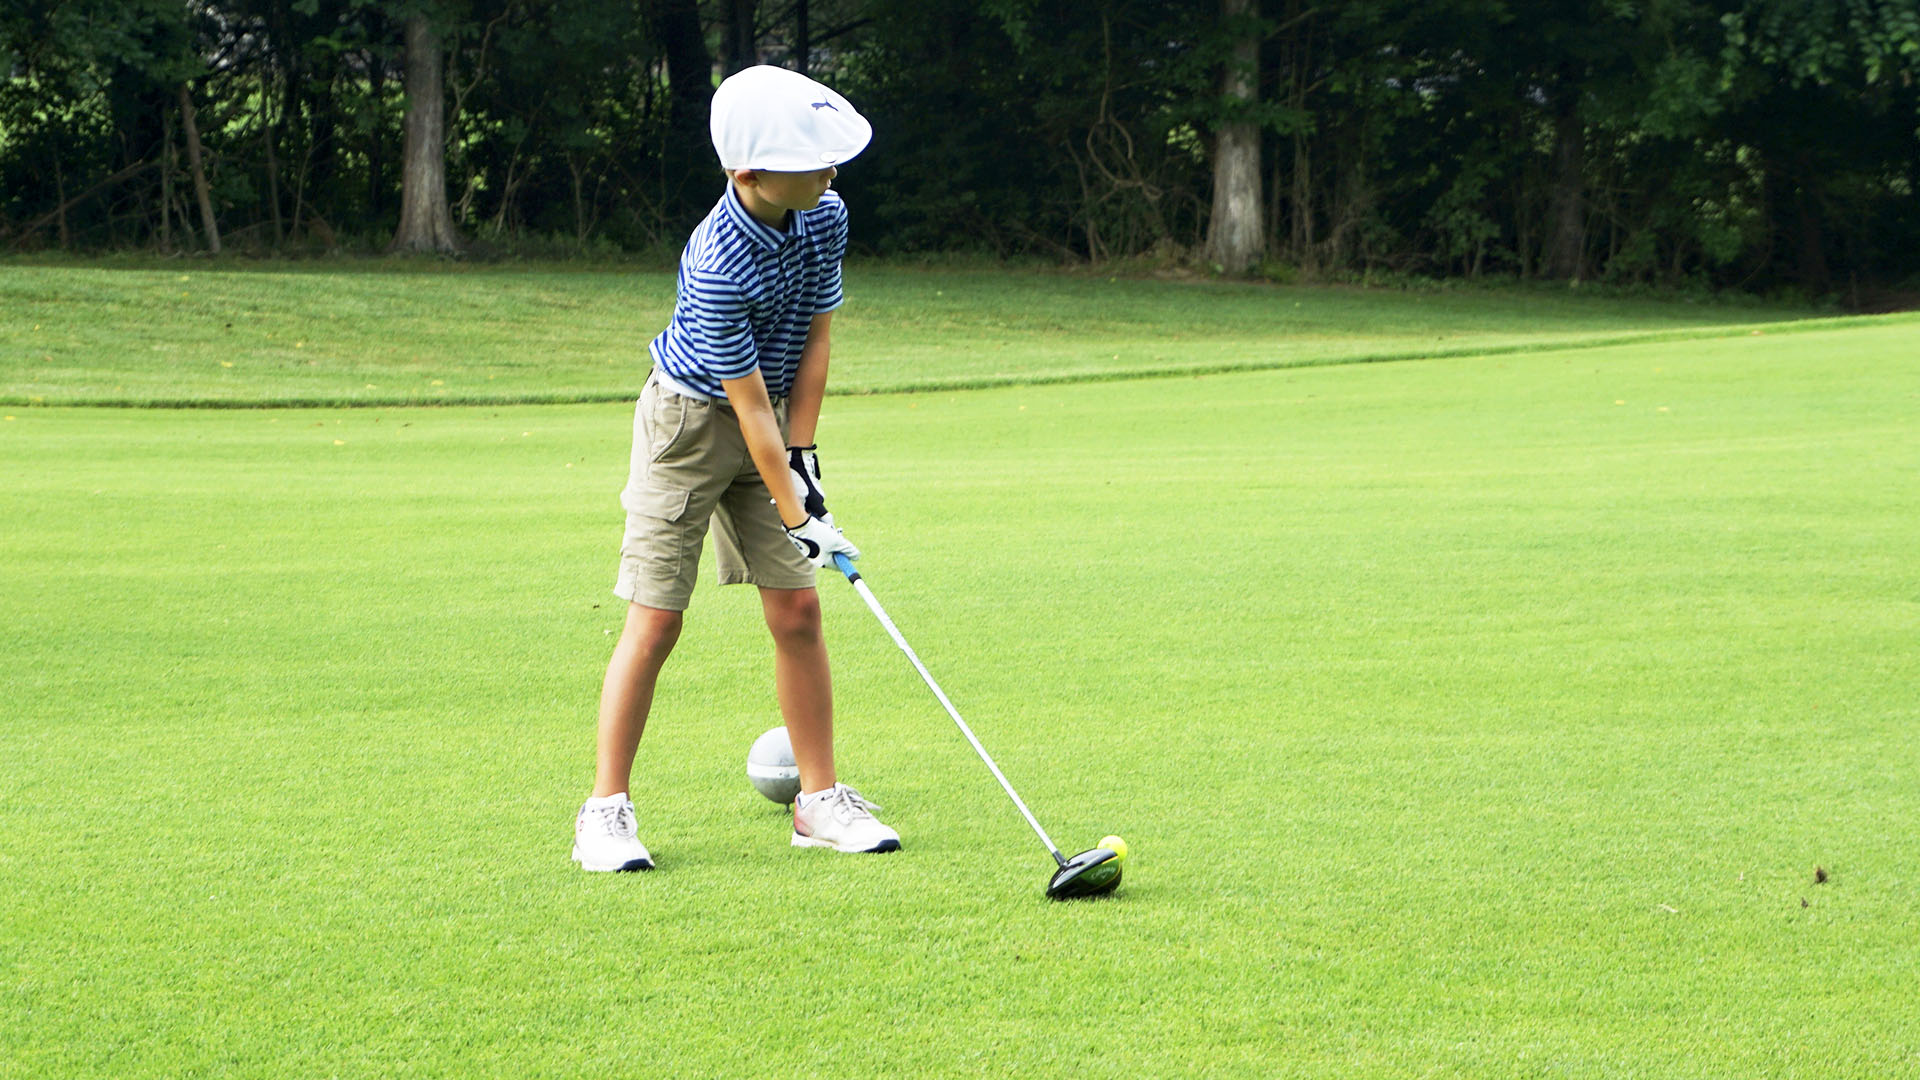 Torneo ‘The One Junior’ de golf y pádel en la Escuela Municipal de El Ángel